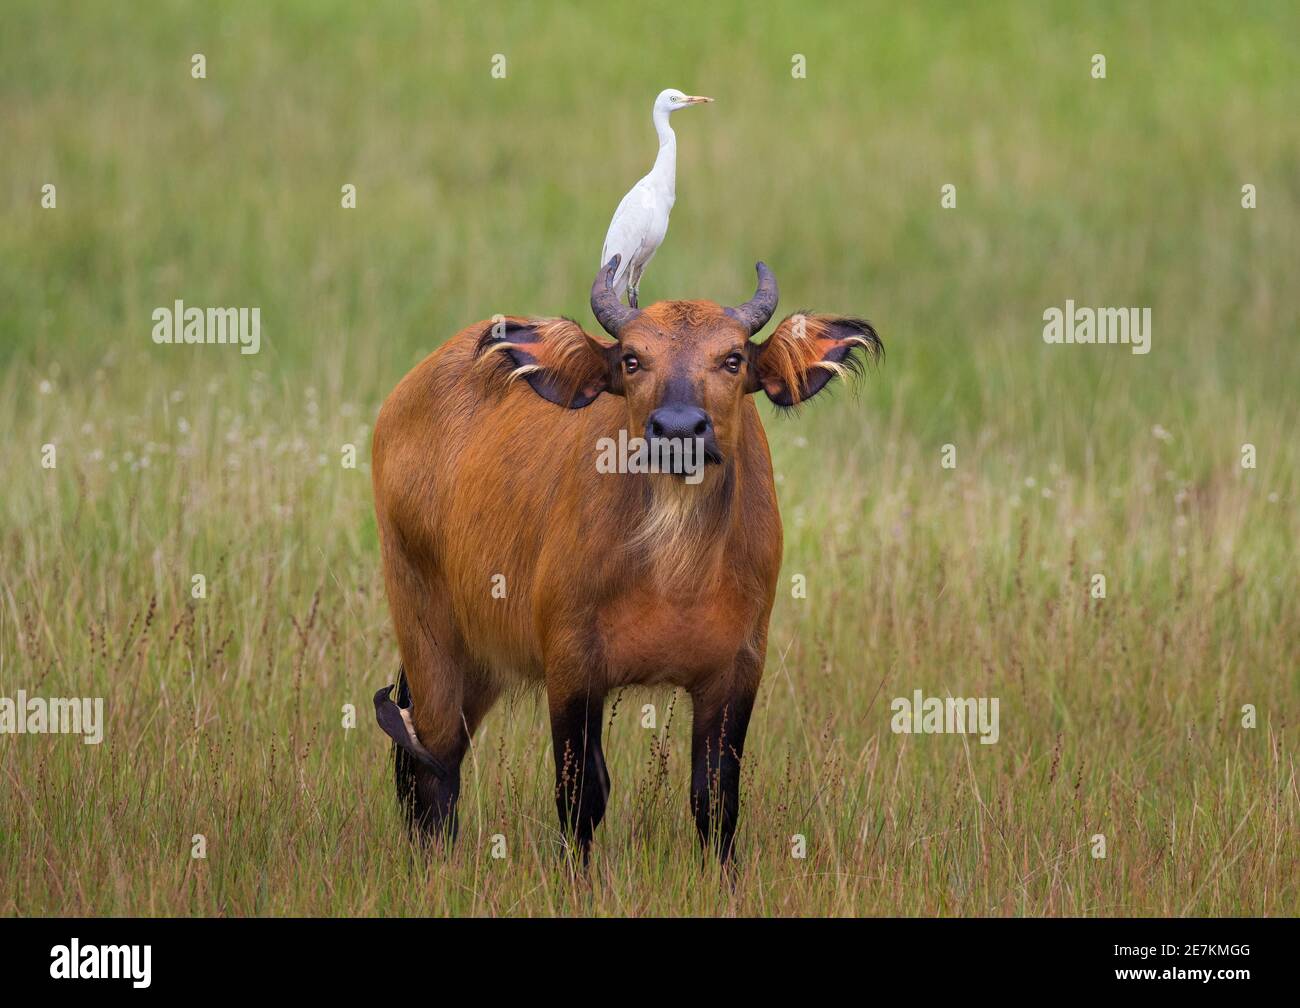 Foresta Africana o Buffalo nano (Syncerus caffer nanus) con Egret bovino (Bubulcus ibis) sul retro, Parco Nazionale di Loango, Gabon, Africa centrale. Foto Stock